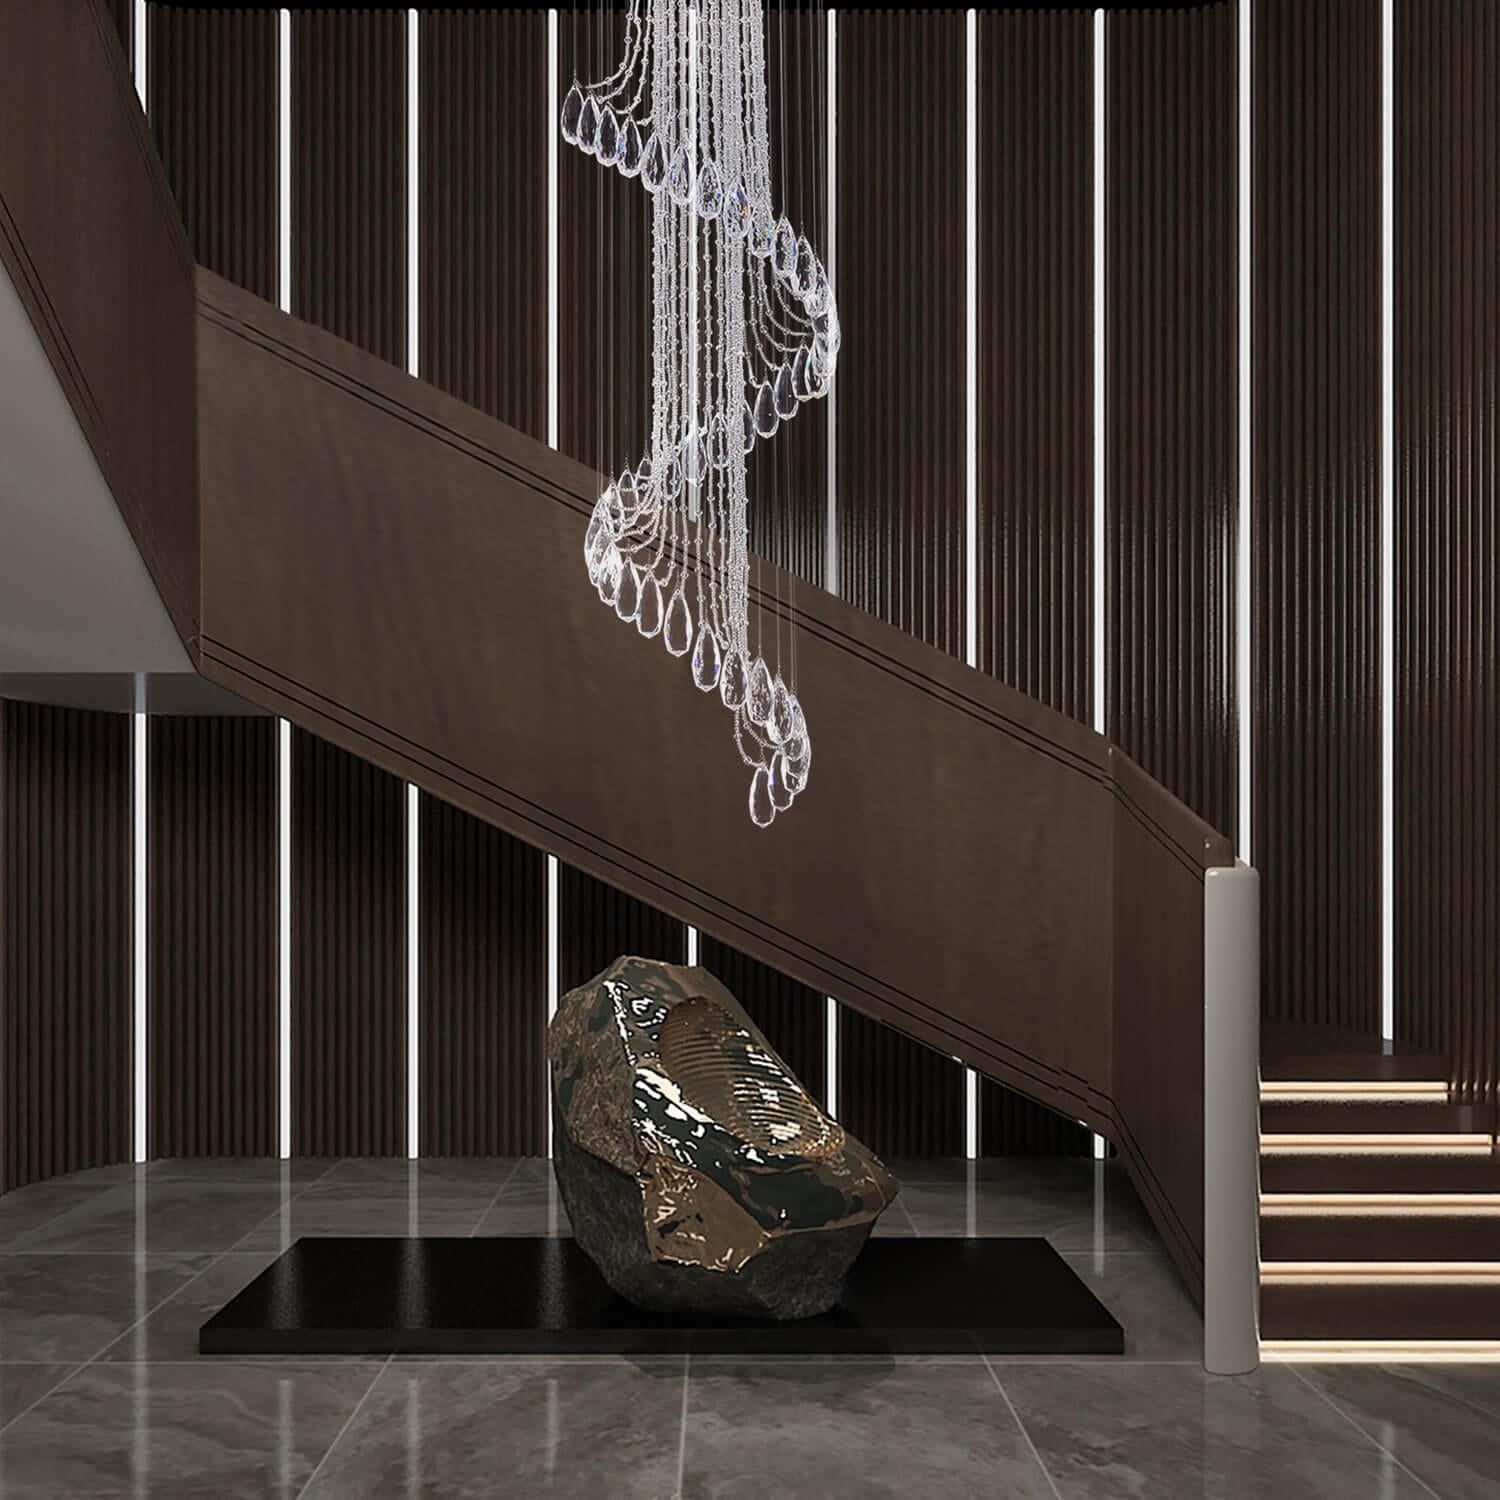 Modern Art Design Crystal Spiral Chandelier - Staircase